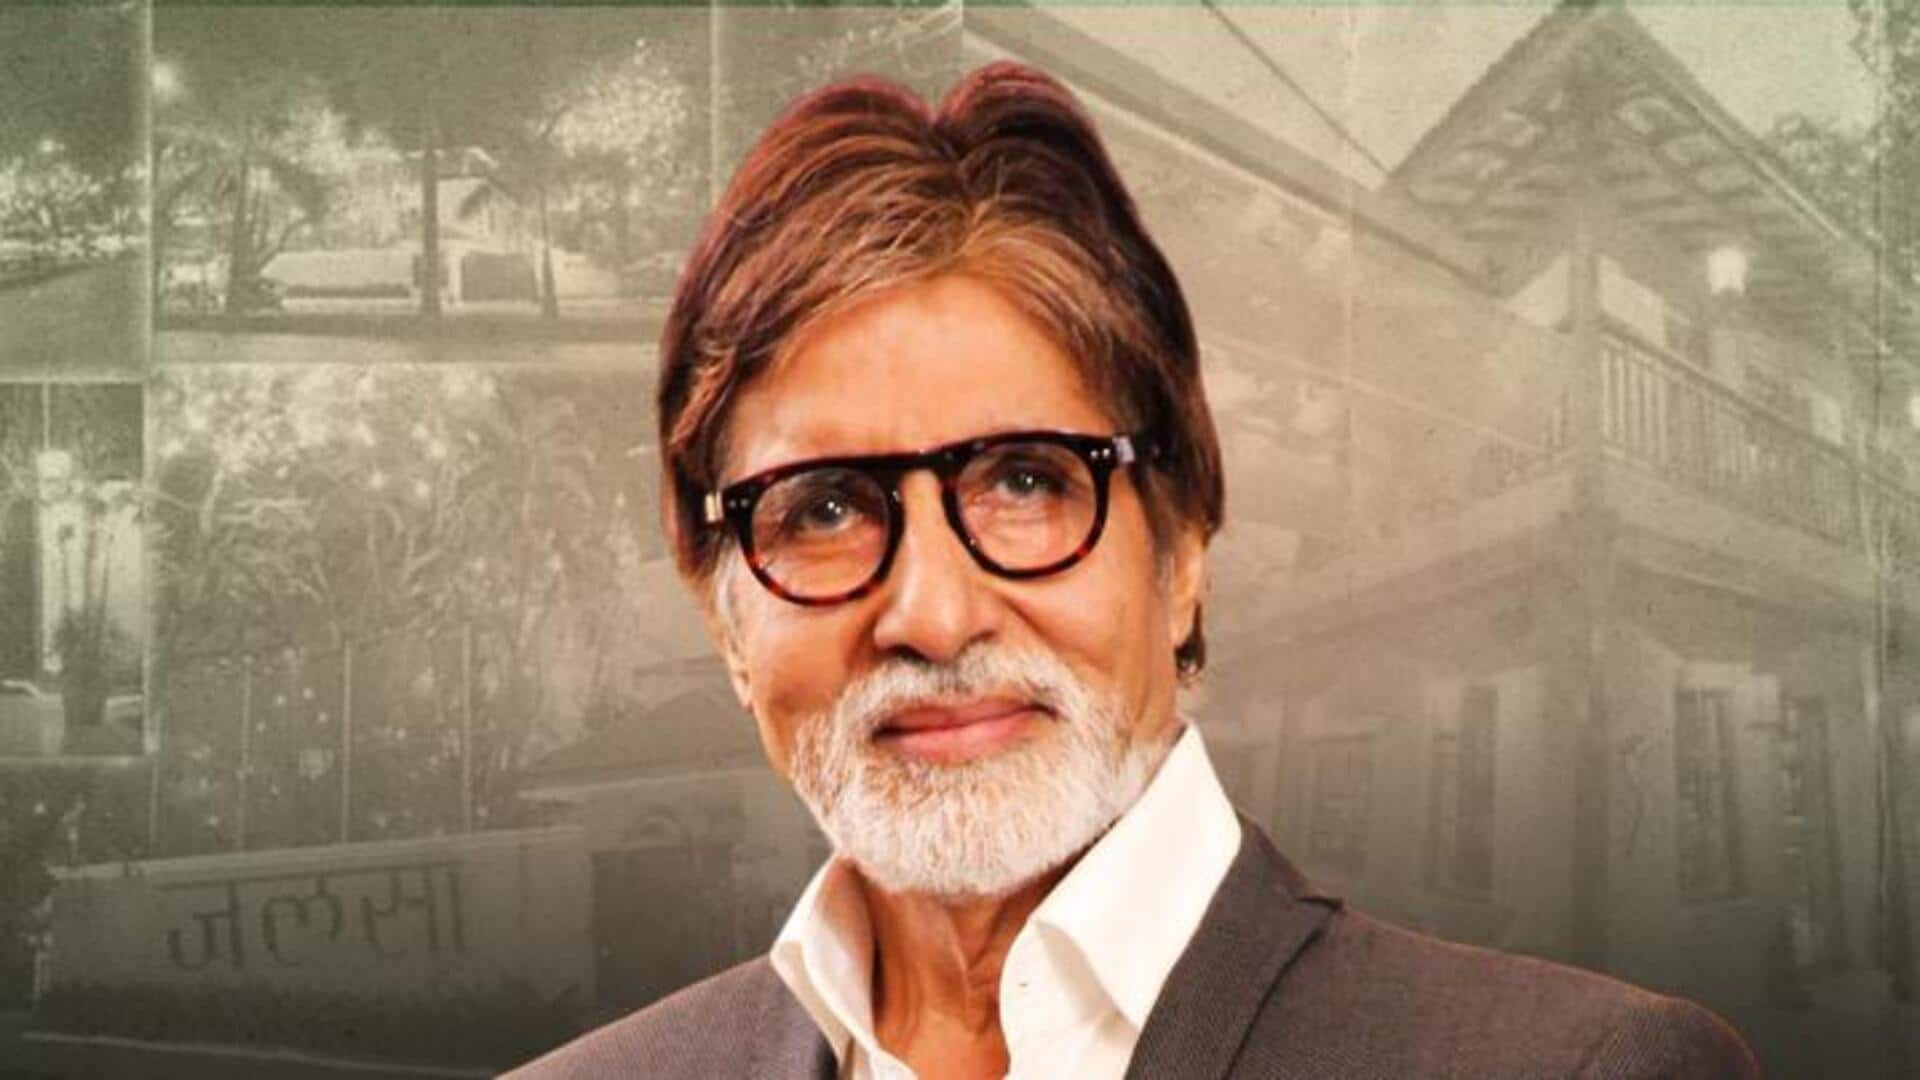 अमिताभ बच्चन ने अयोध्या में बंगला बनाने को खरीदा प्लॉट, जानिए कहां-कहां है अभिनेता की संपत्ति